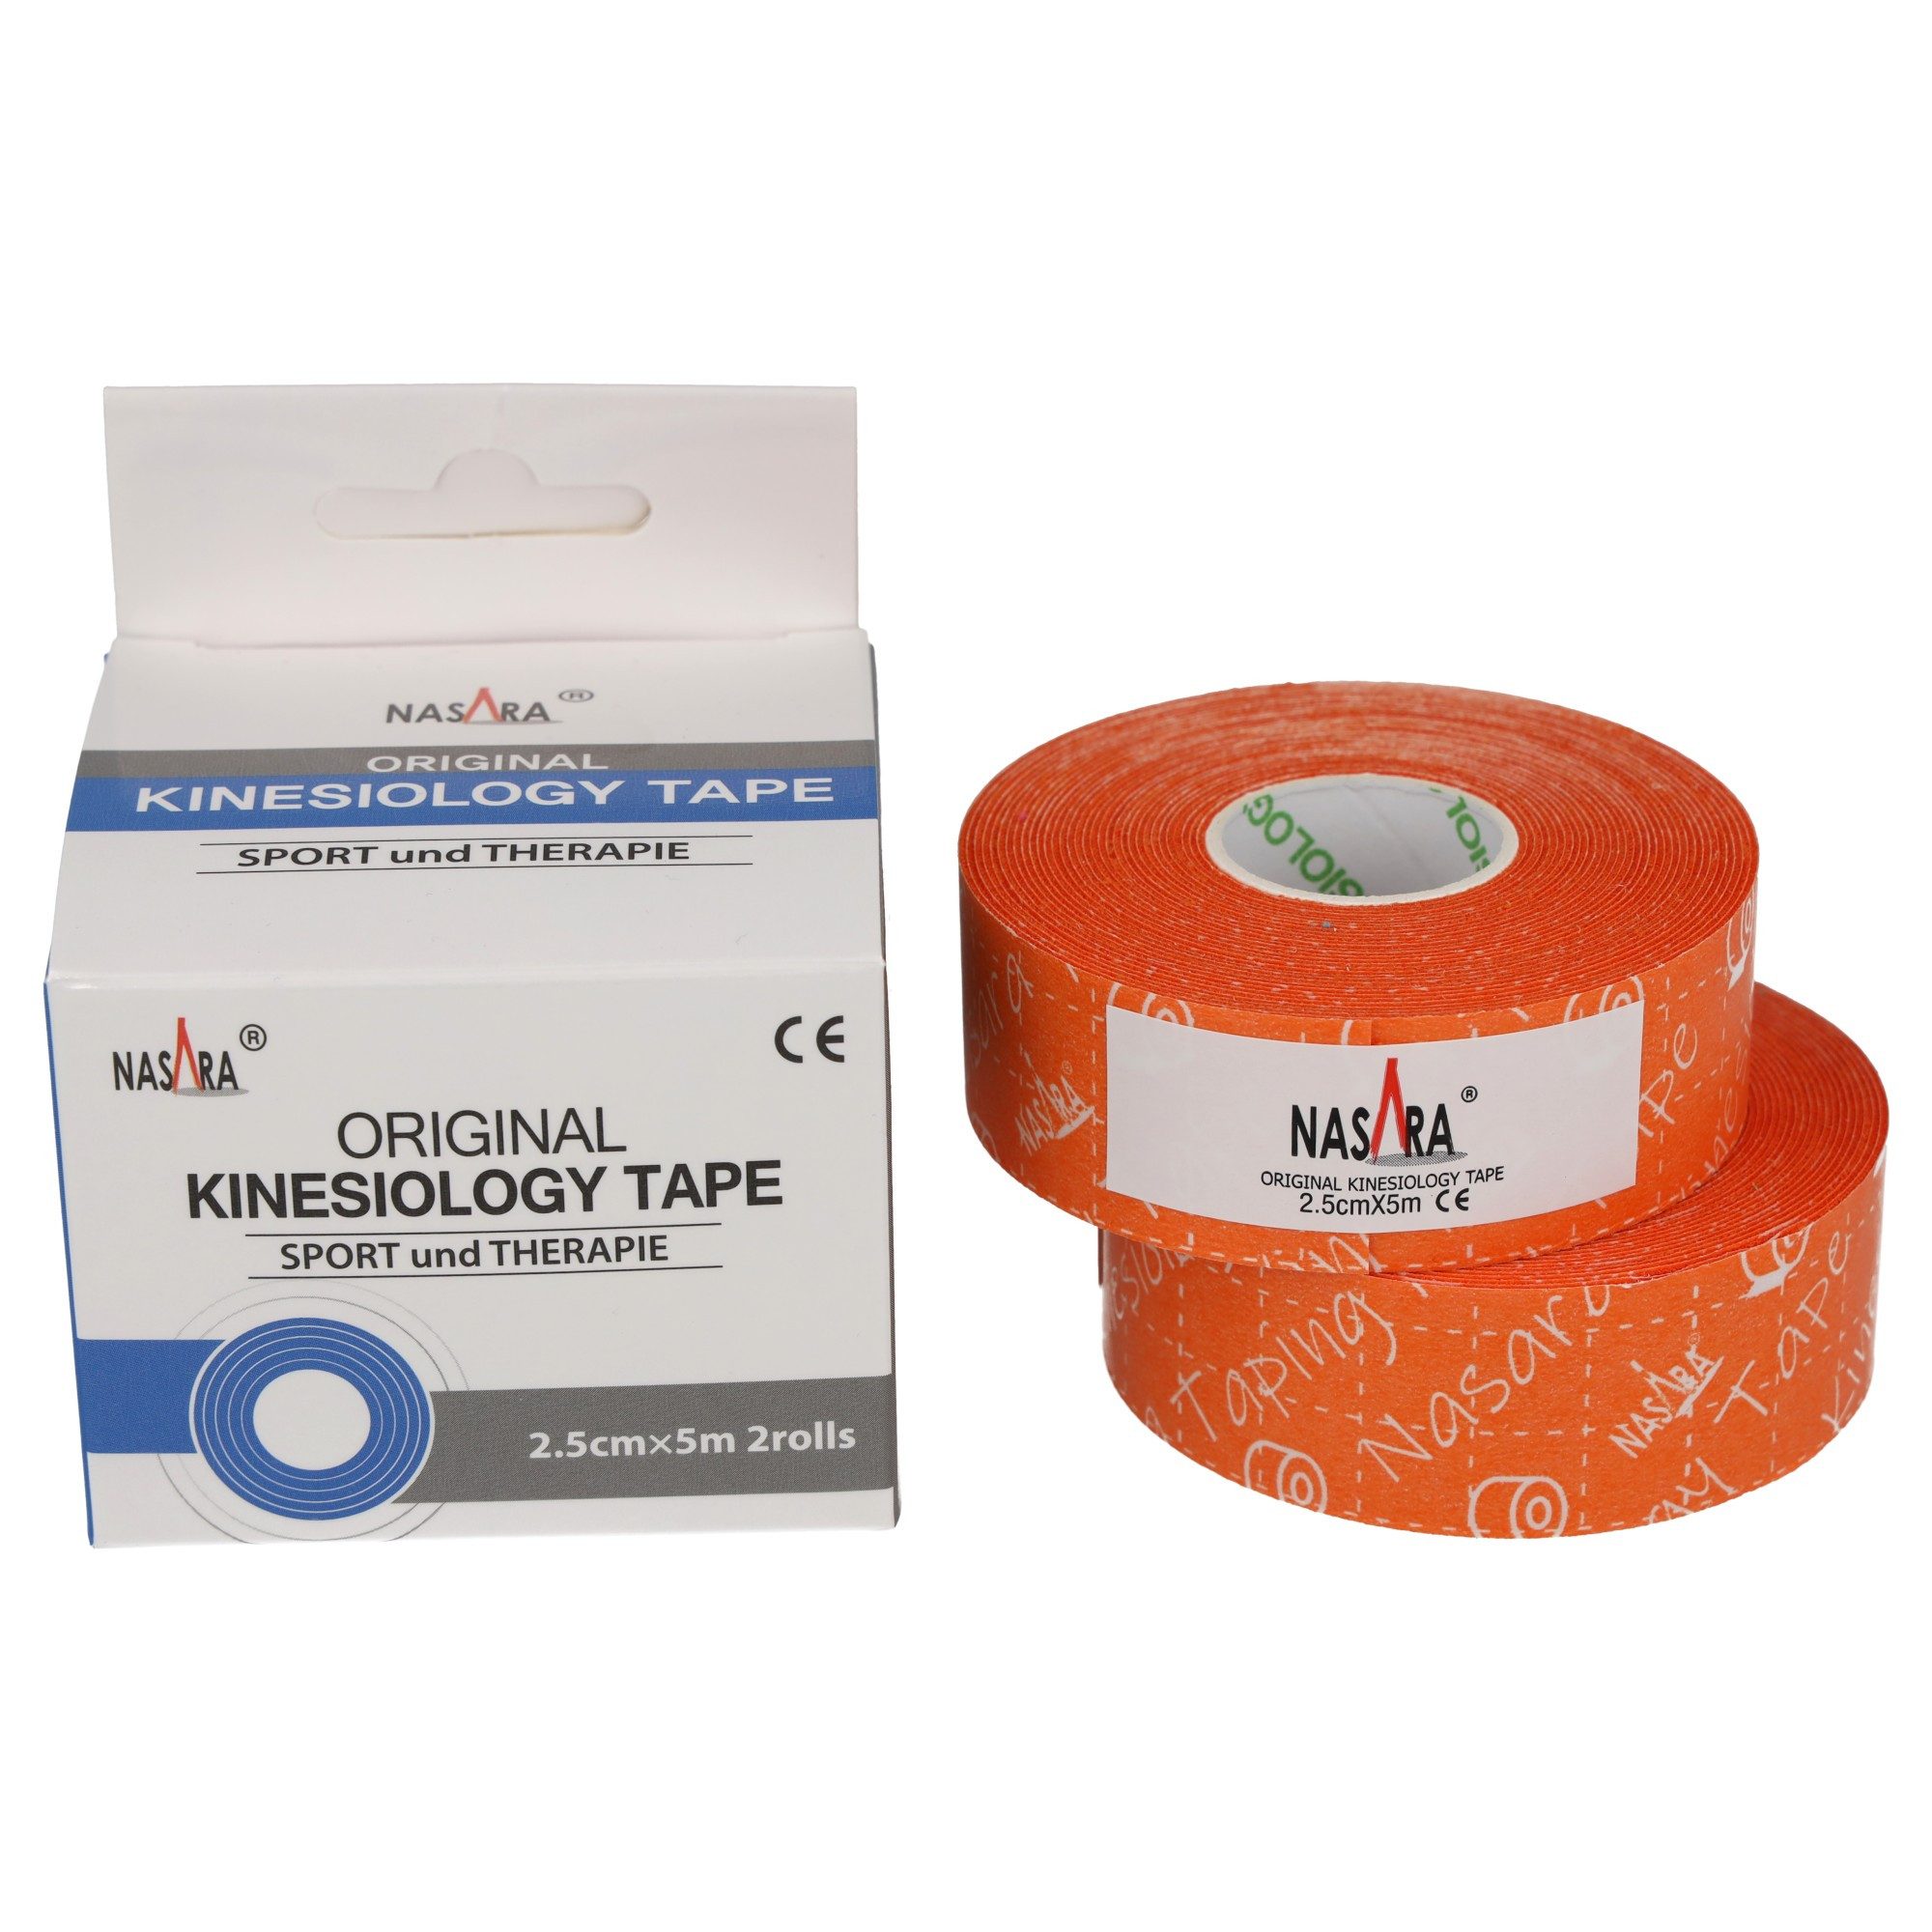 NASARA Kinesiologie-Tape 2,5cm x 5m - 2 Rollen in 9 Farben